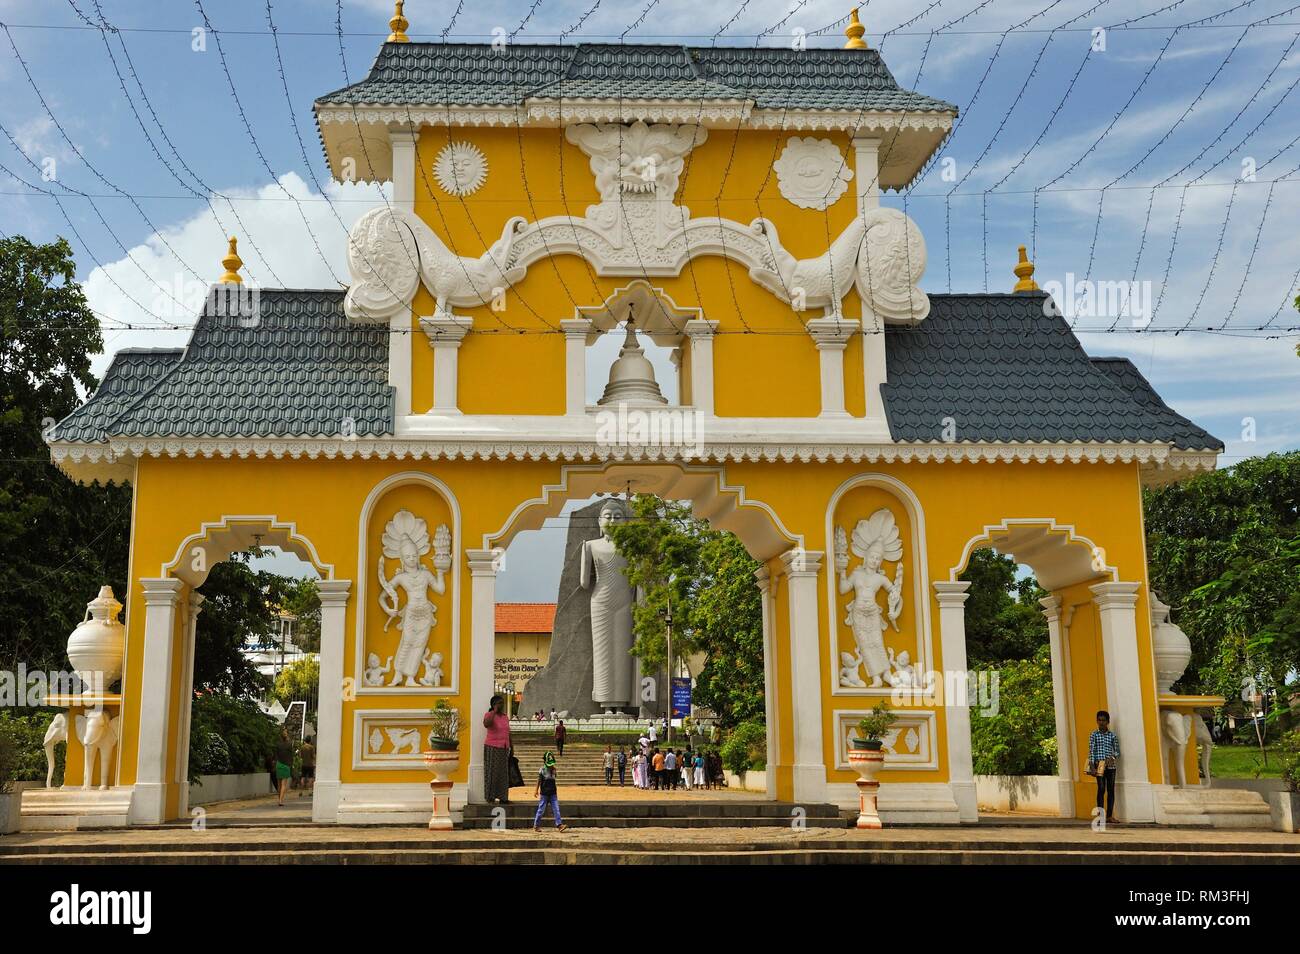 Eingang des Uthpalawanna Sri Vishnu Devalaya Tempel, sowohl der buddhistischen und hinduistischen Ort der Anbetung, Dondra, South Coast, Sri Lanka, Indien Stockfoto